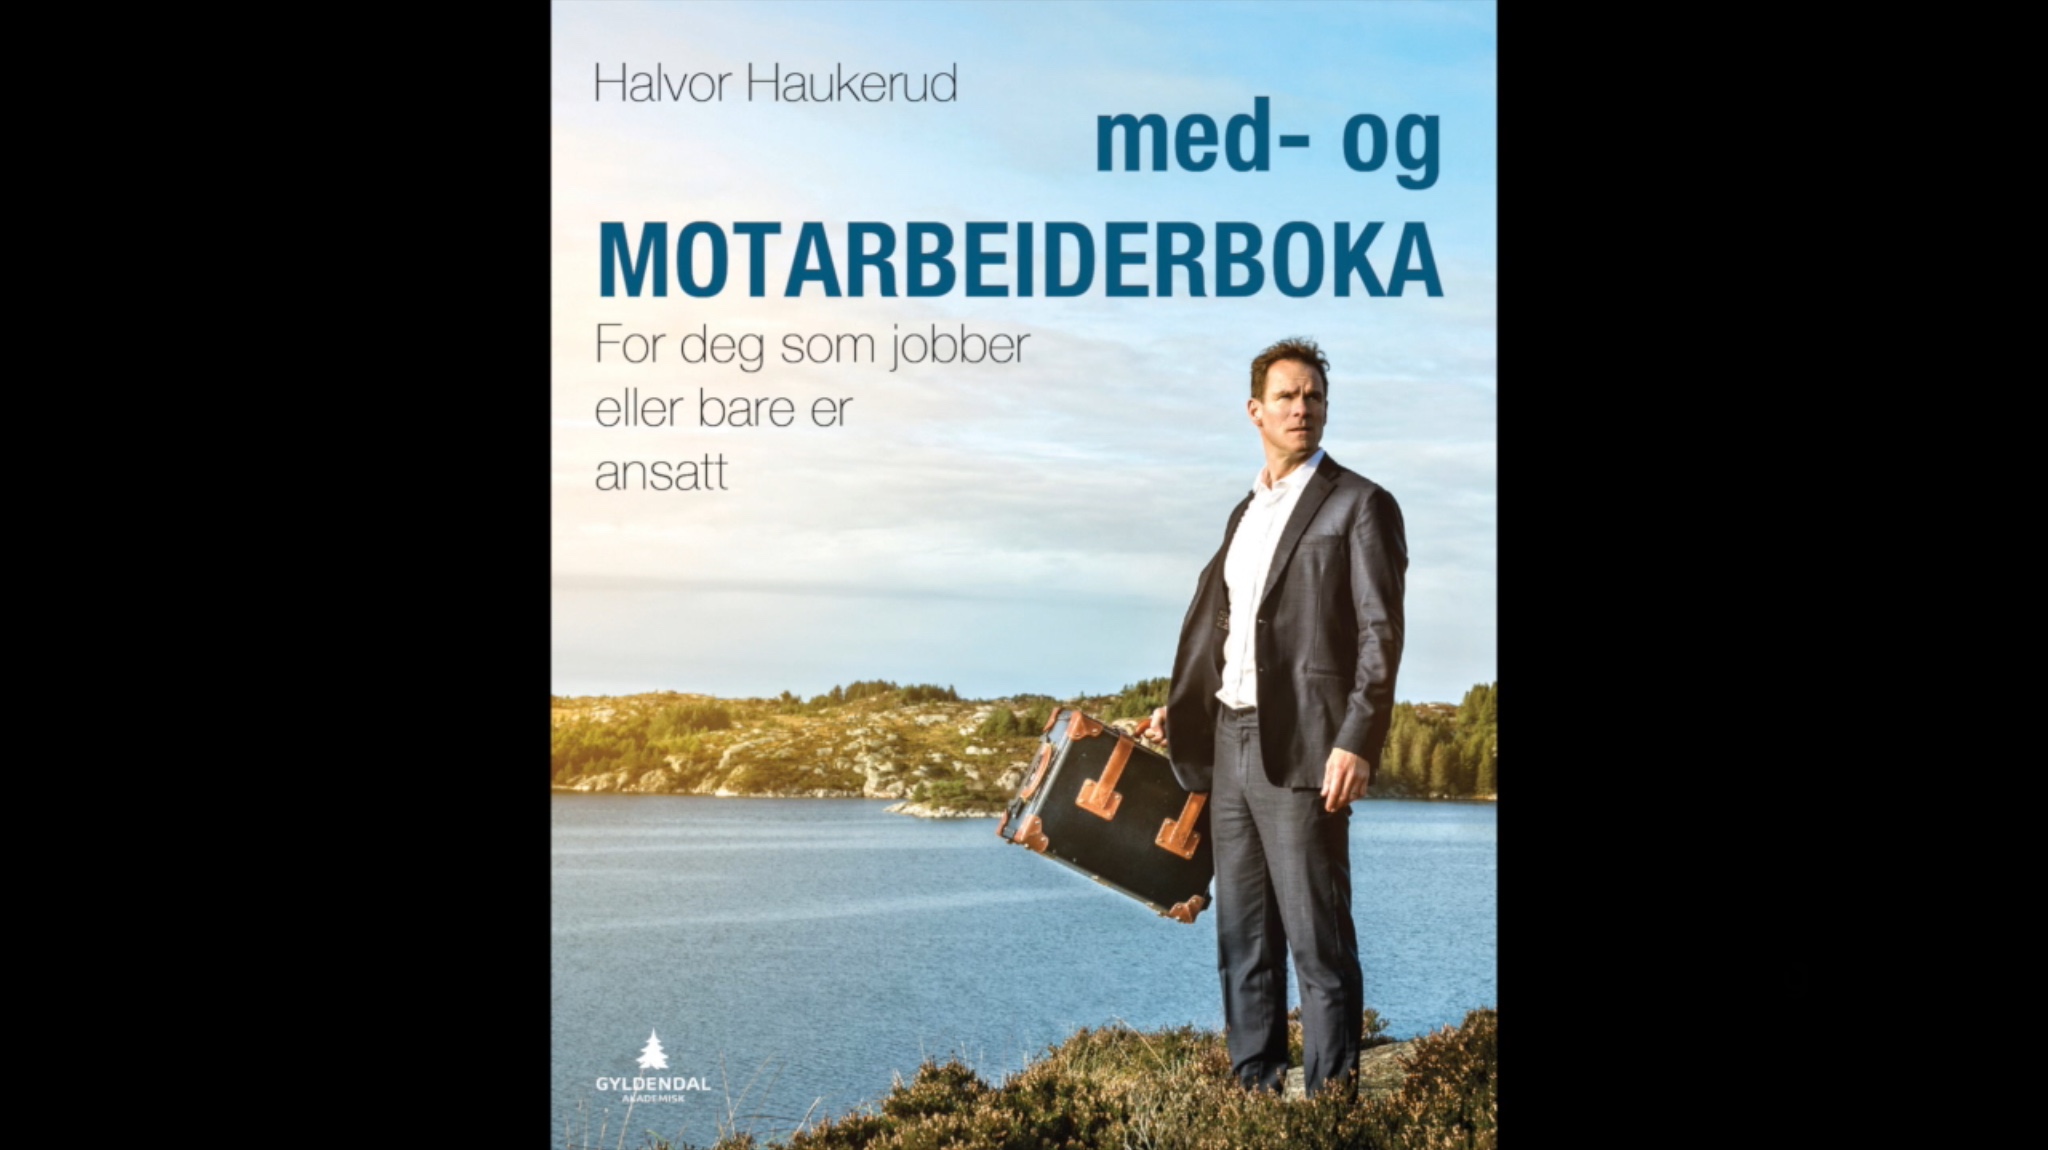 med- og MOTARBEIDERBOKA av Halvor Haukerud - For deg som jobber eller bare er ansatt